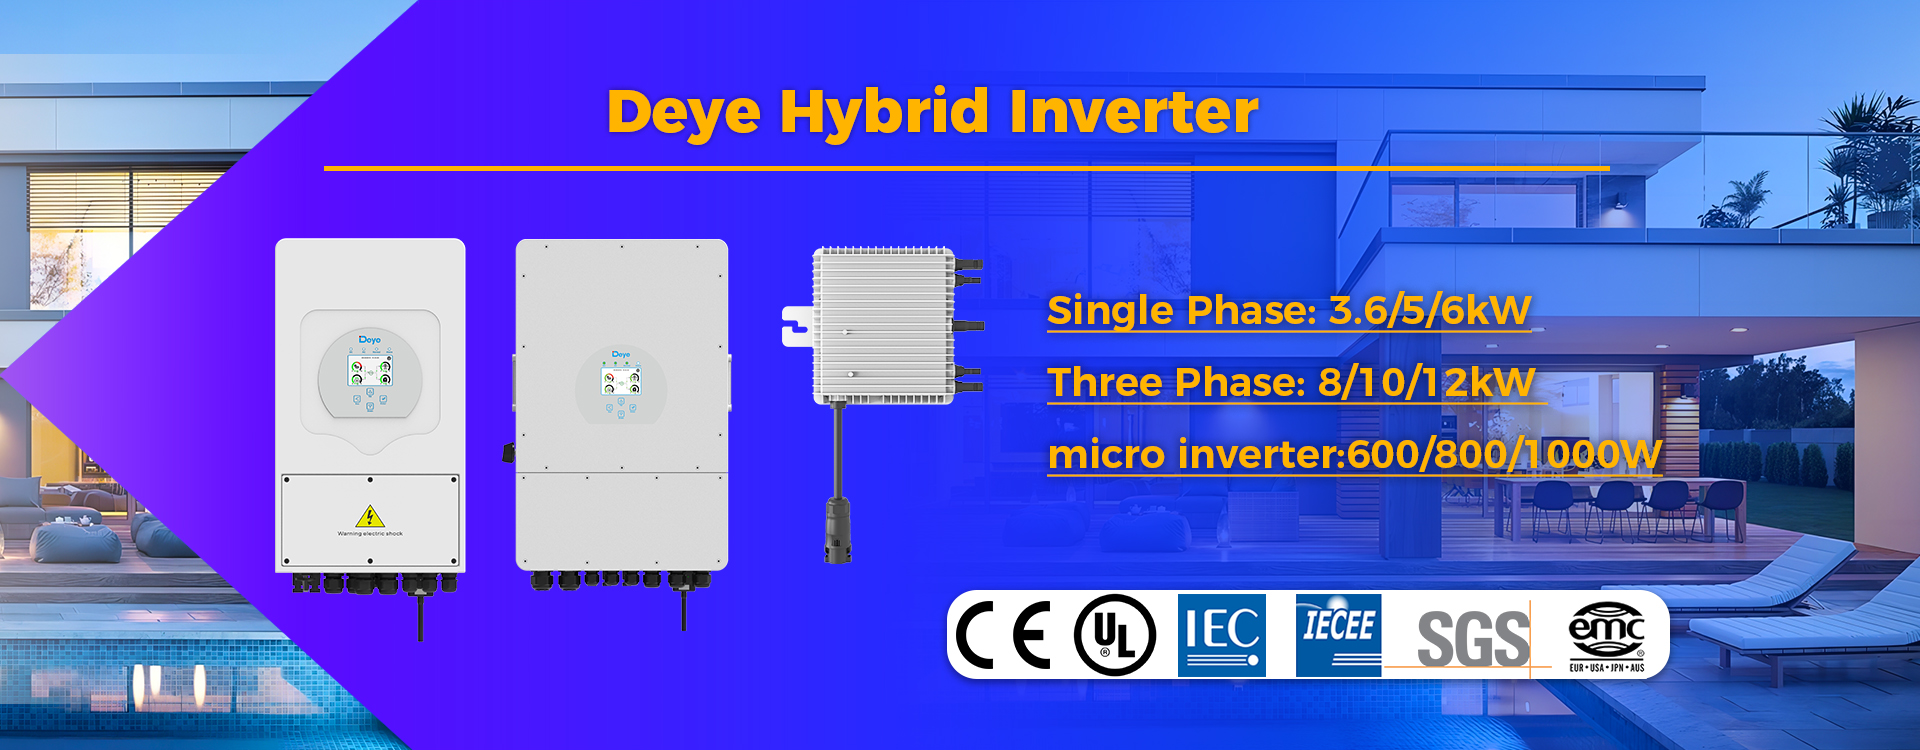 deye hybrid inverter mikroinverter